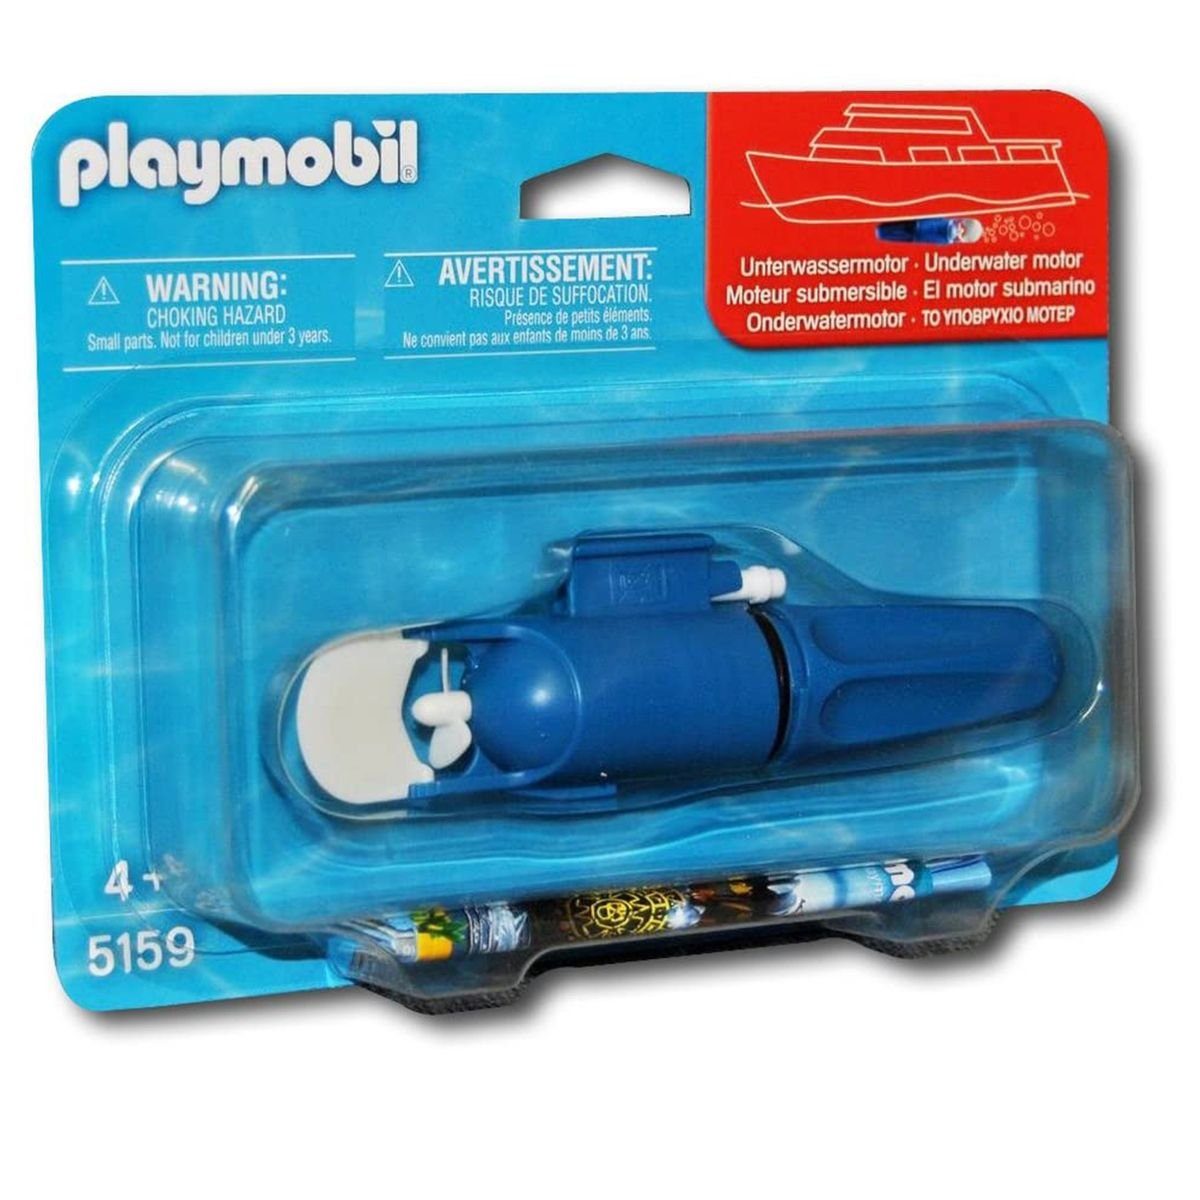 Playmobil® Spielwelt PLAYMOBIL® 5159 - Unterwassermotor, Erfordert eine  AA-Batterie (LR6), die nicht im Lieferumfang enthalten ist